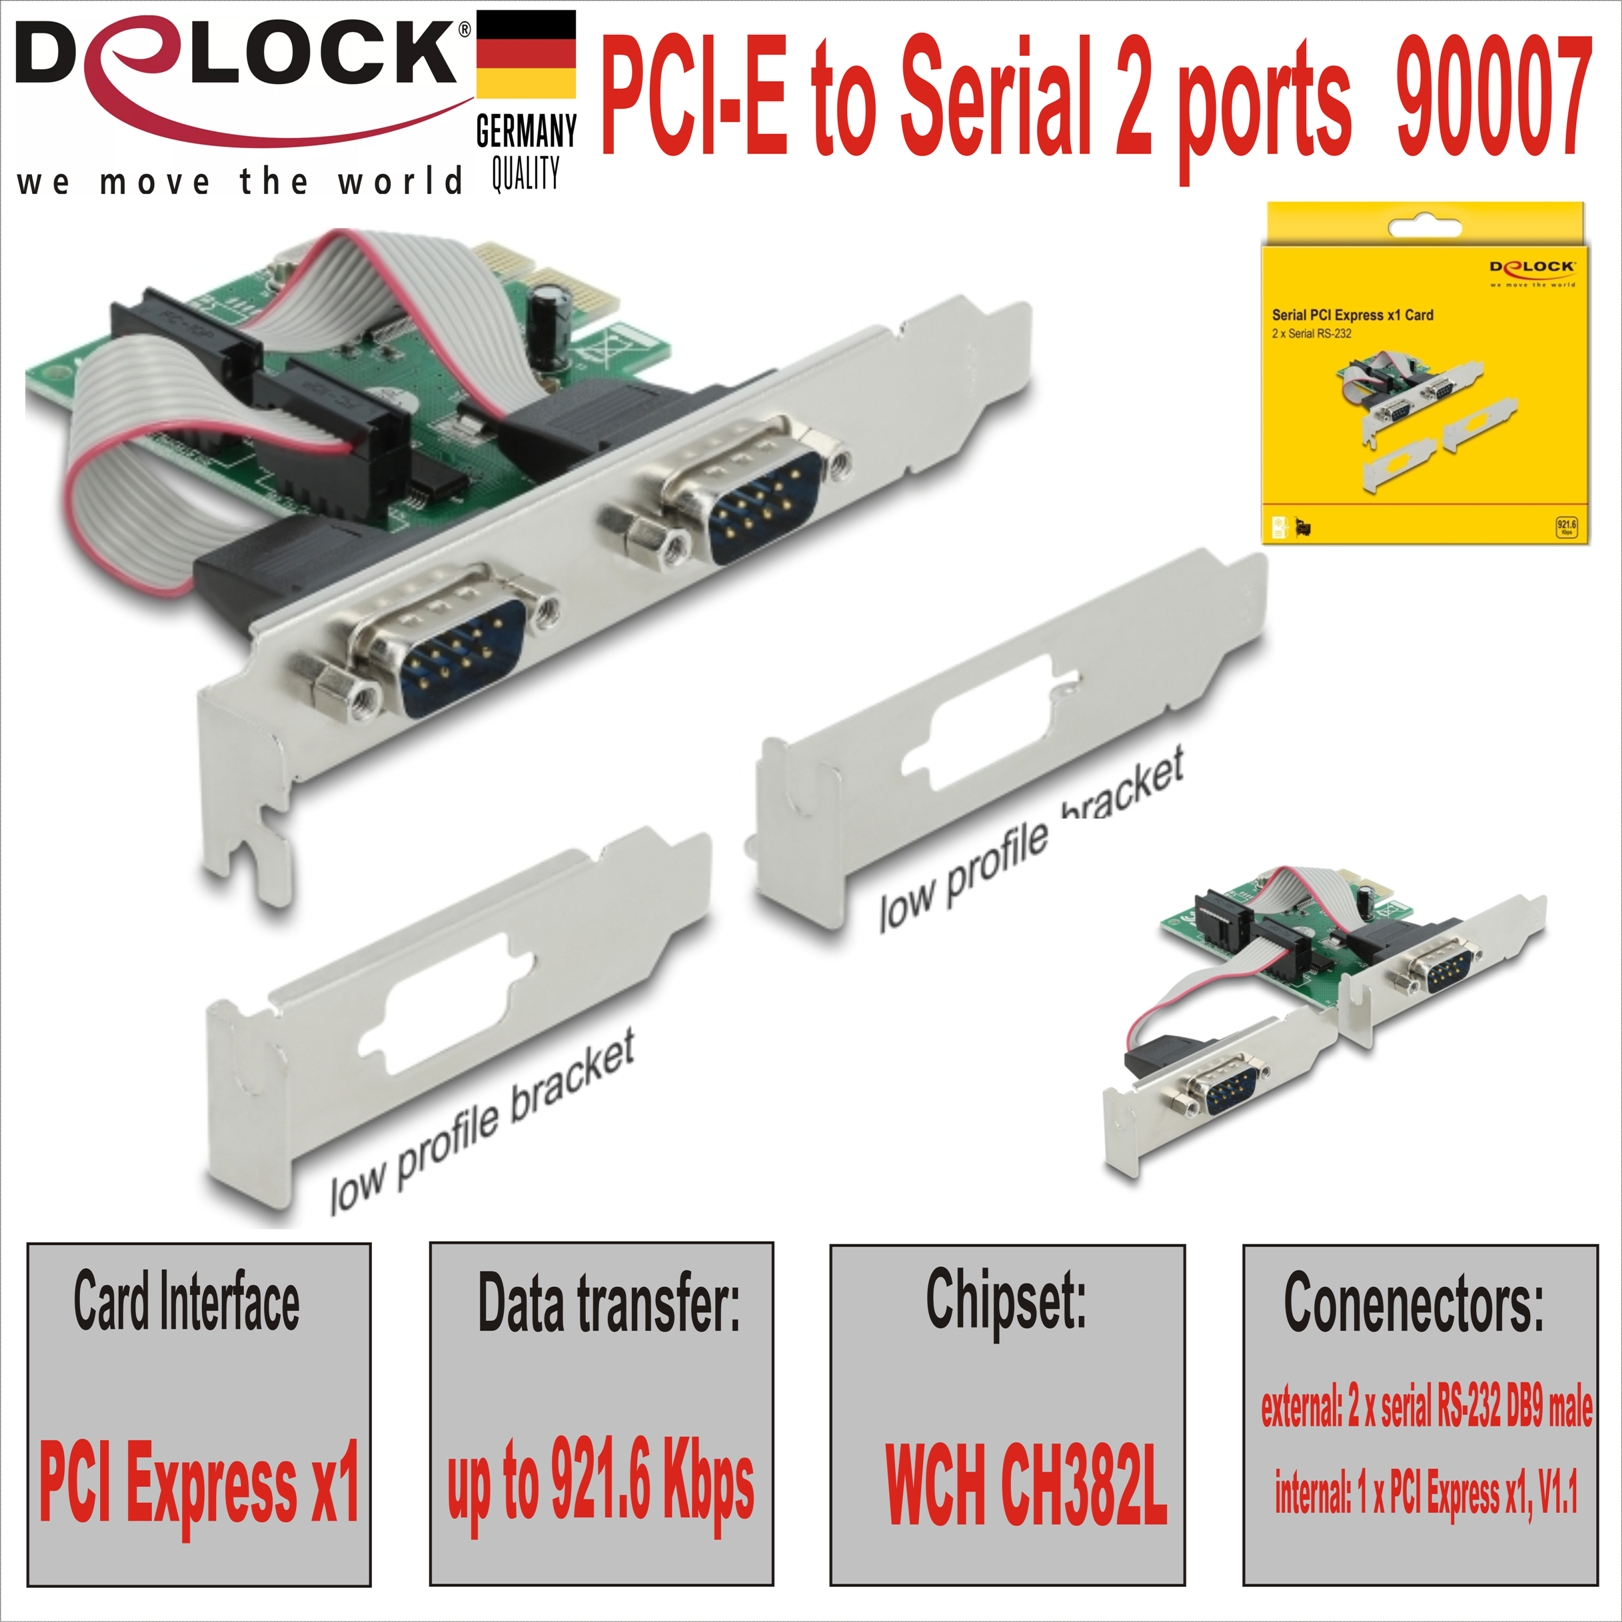 PCI-E to Serial 2 ports Delock 90007